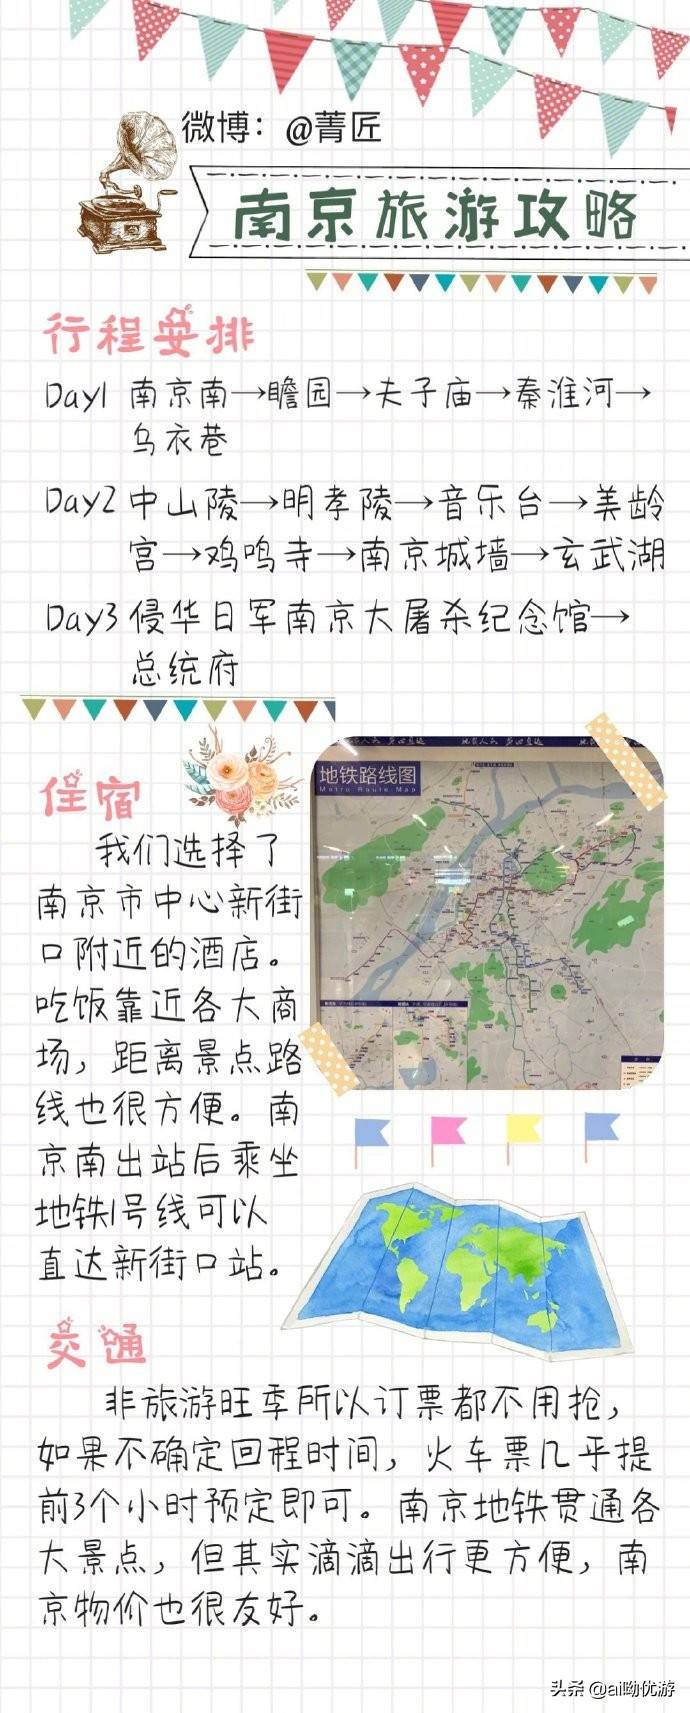 南京一座拥有历史文化底蕴的城市三天两晚自由行旅游攻略